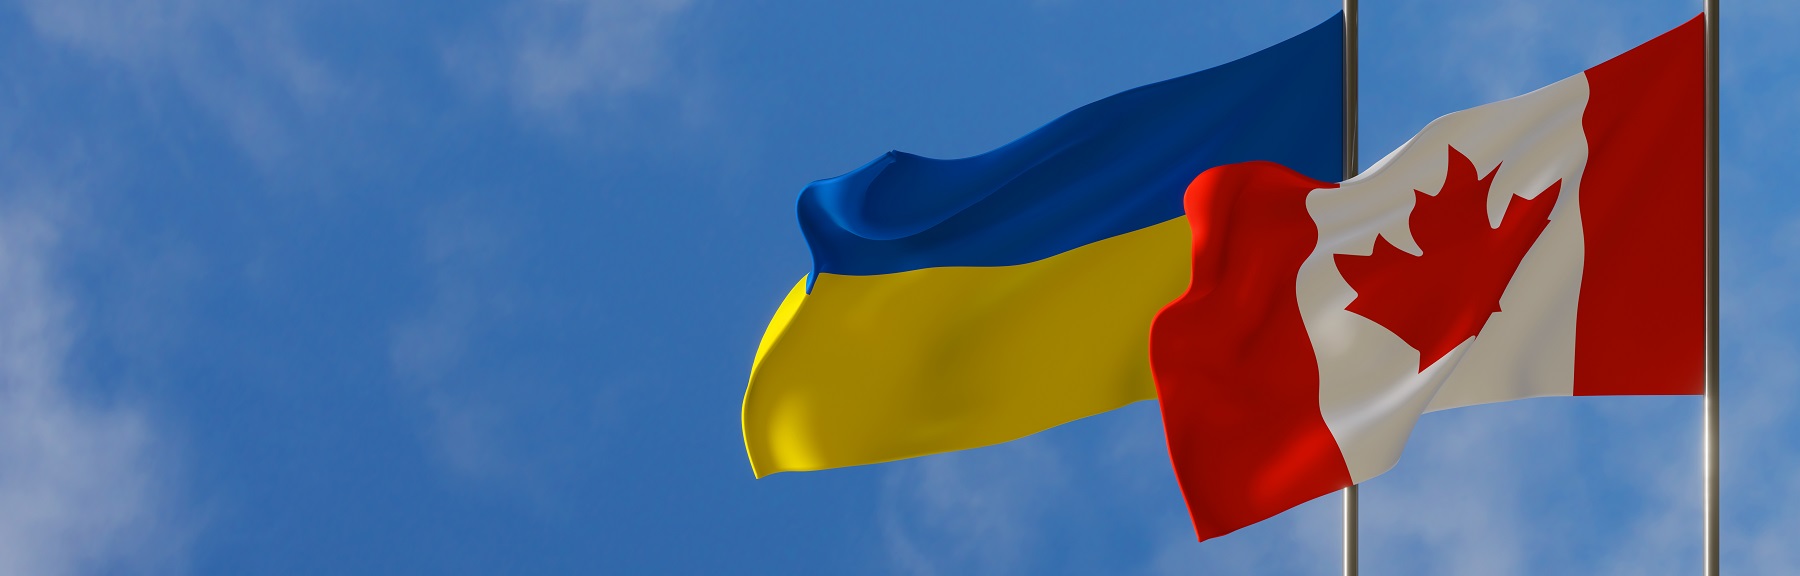 Mesures d’immigration pour l’Ukraine : statistiques clés